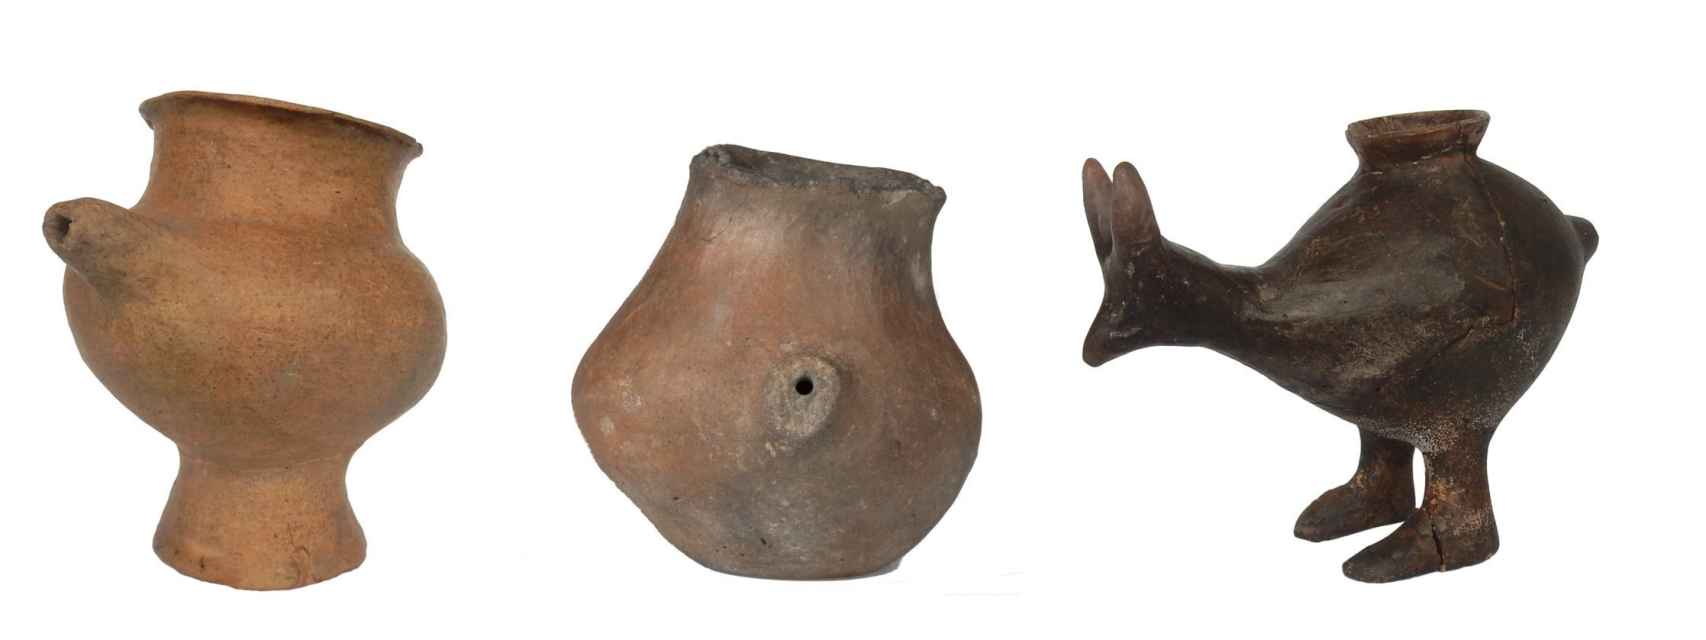 Selección de biberones de finales de la Edad del Bronce, hallados en Vienna, Oberleis y Vösendorf, datados entre 1200-800 a.C.